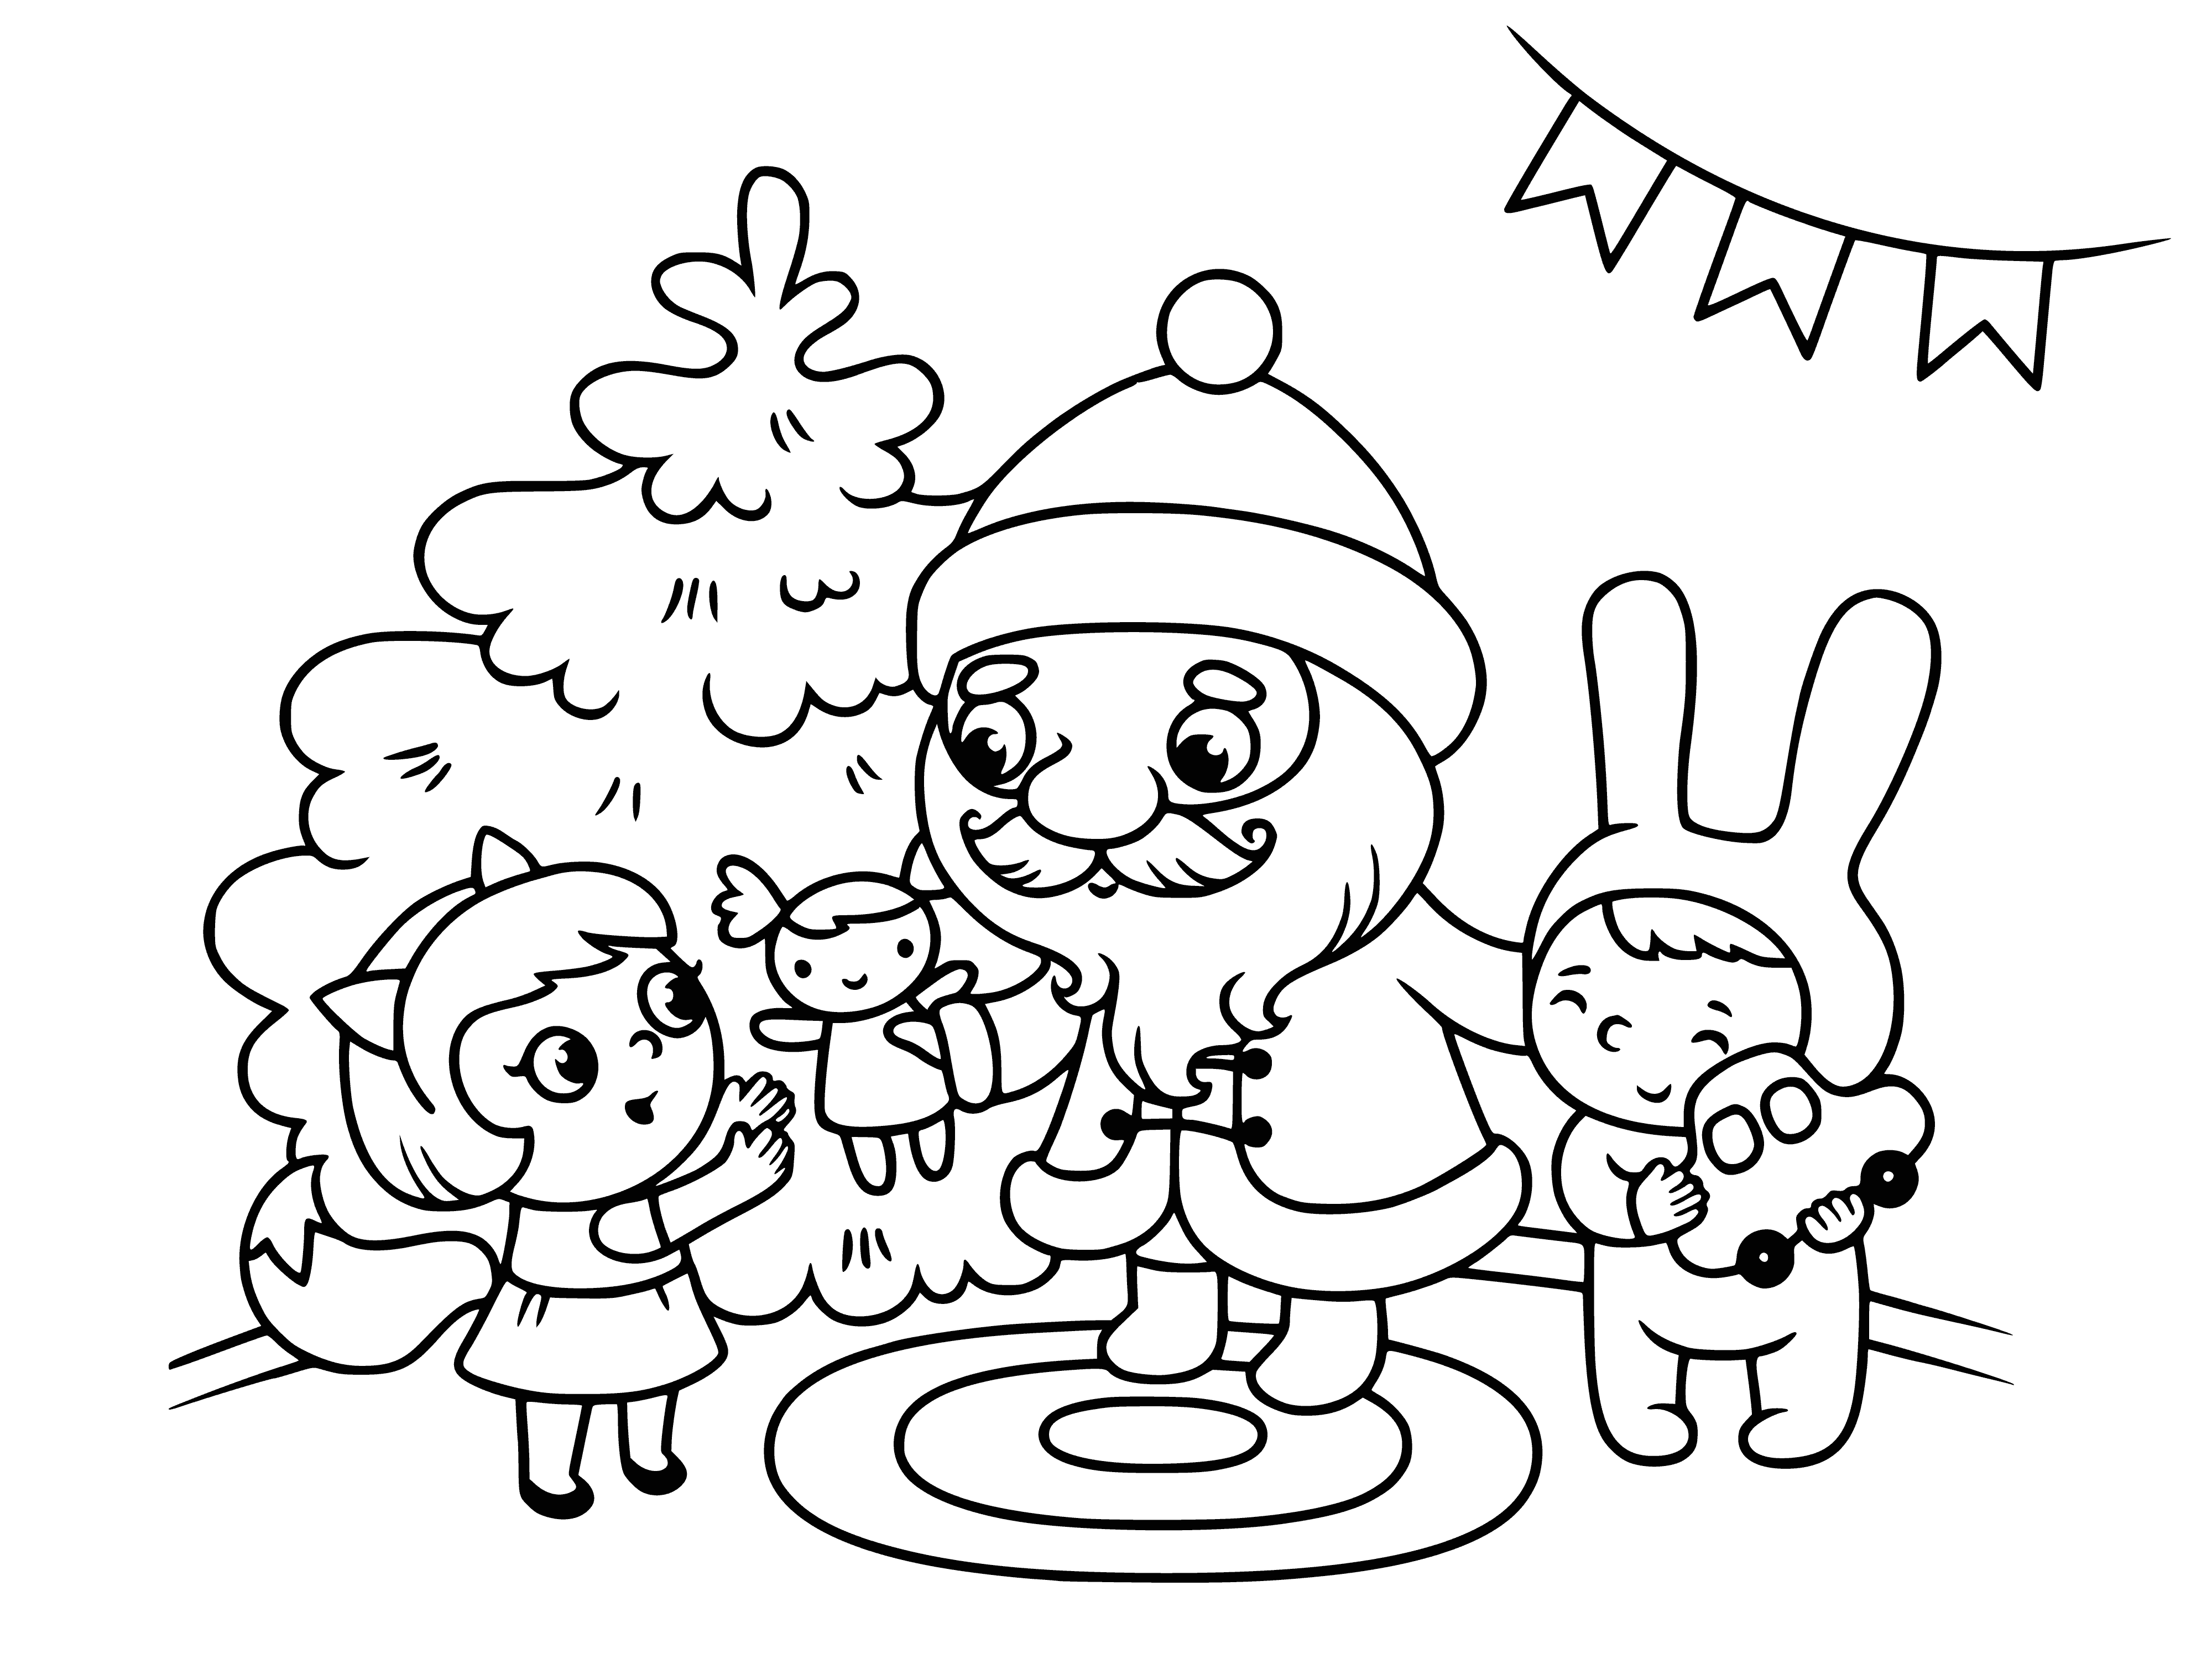 Święty Mikołaj daje prezenty dzieciom kolorowanka